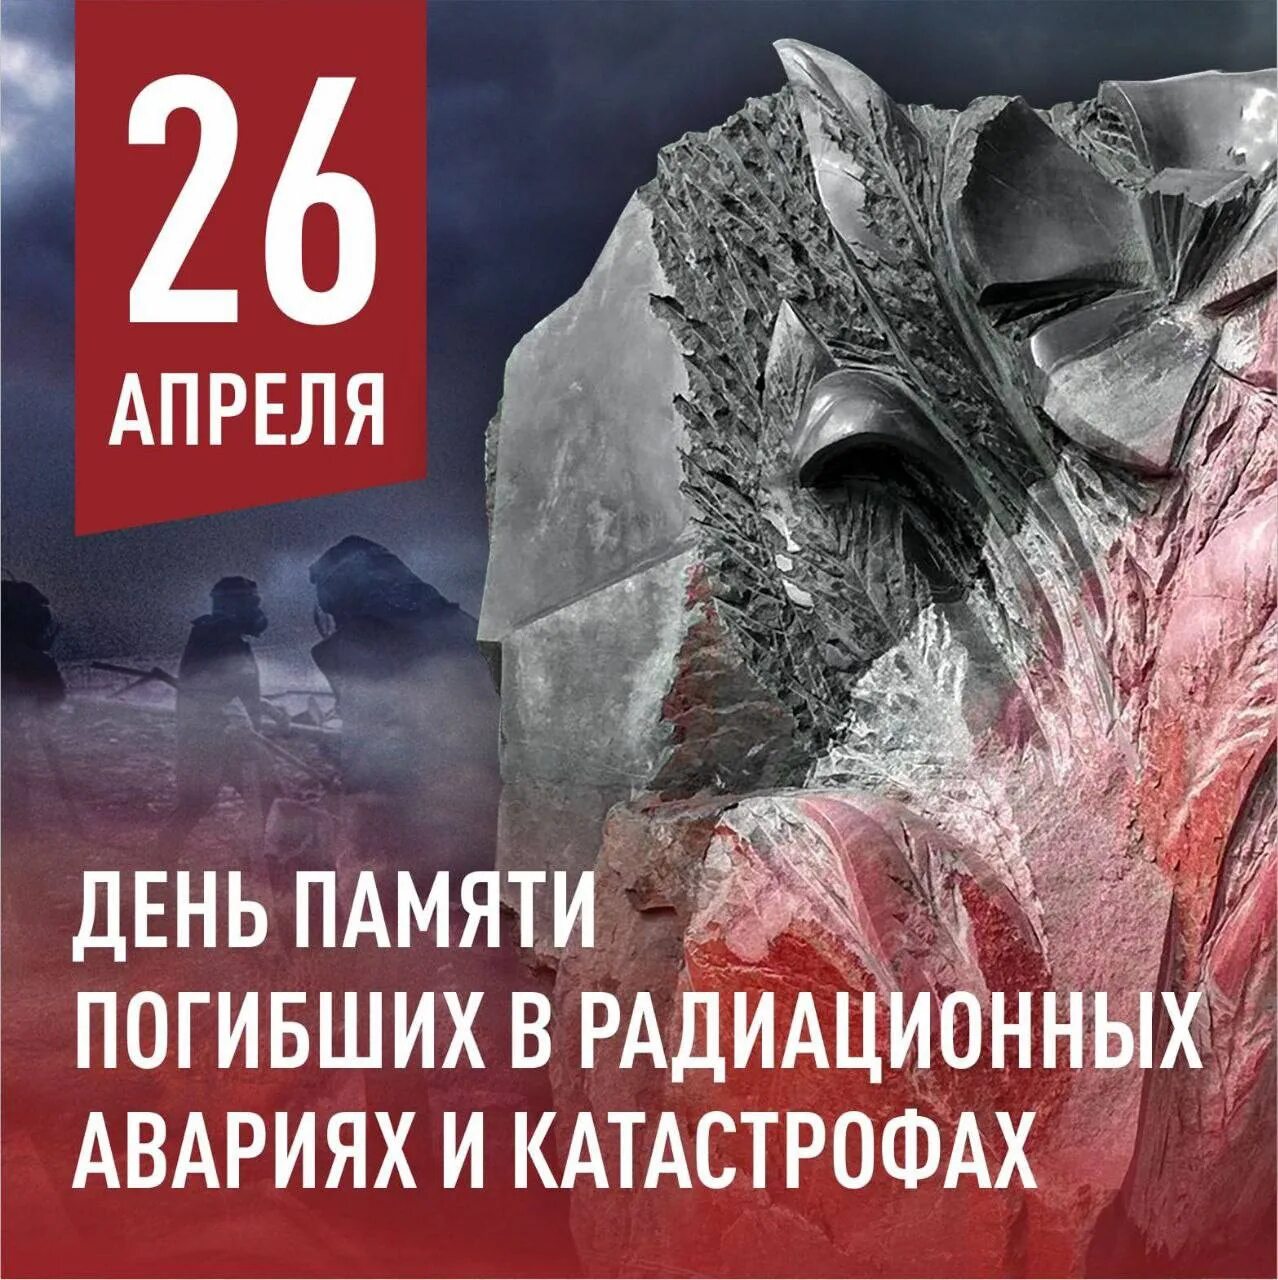 26 апреля день рождения. 26 Апреля день памяти погибших в радиационных авариях и катастрофах. 26 Апреля день памяти. День памяти погибших в радиационных катастрофах. Чернобыль день памяти.